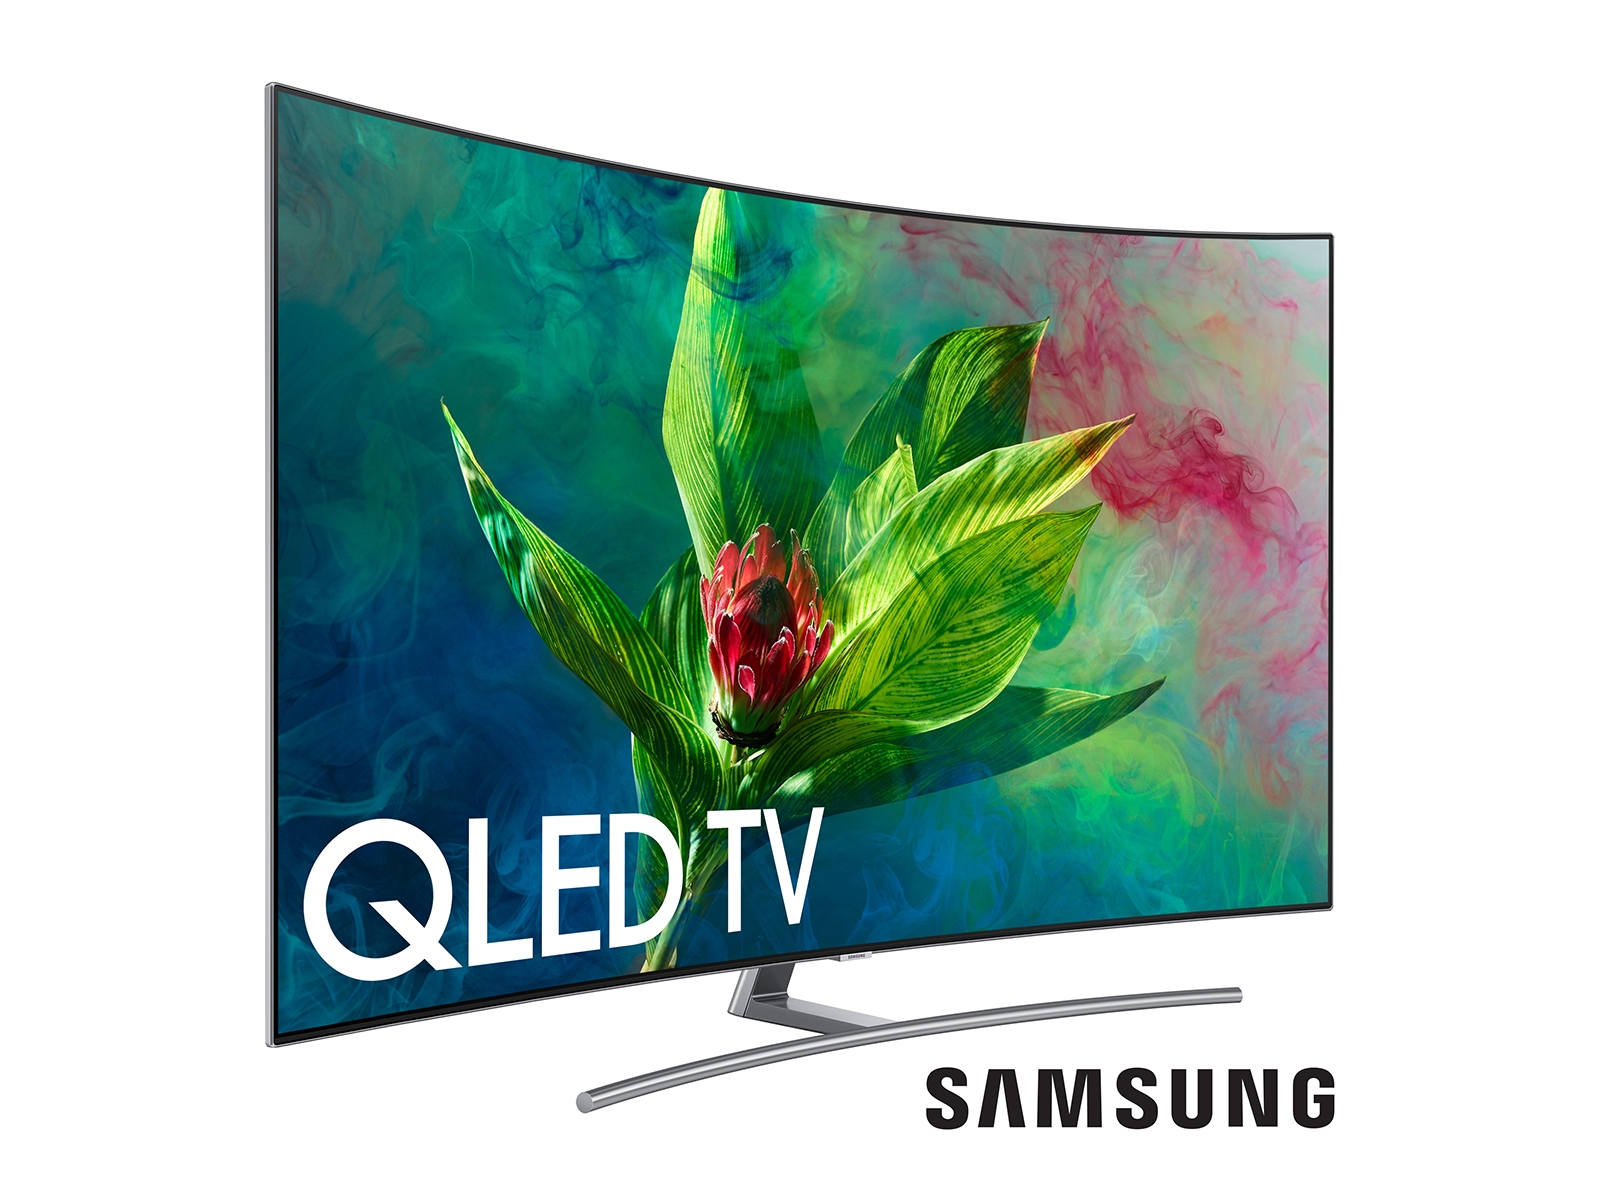 Qled телевизор 65 купить. QLED TV Samsung 55. Самсунг QLED 55 дюймов. Телевизор QLED Samsung qe65q8cam 65" (2017). Телевизор самсунг QLED Curved 55.